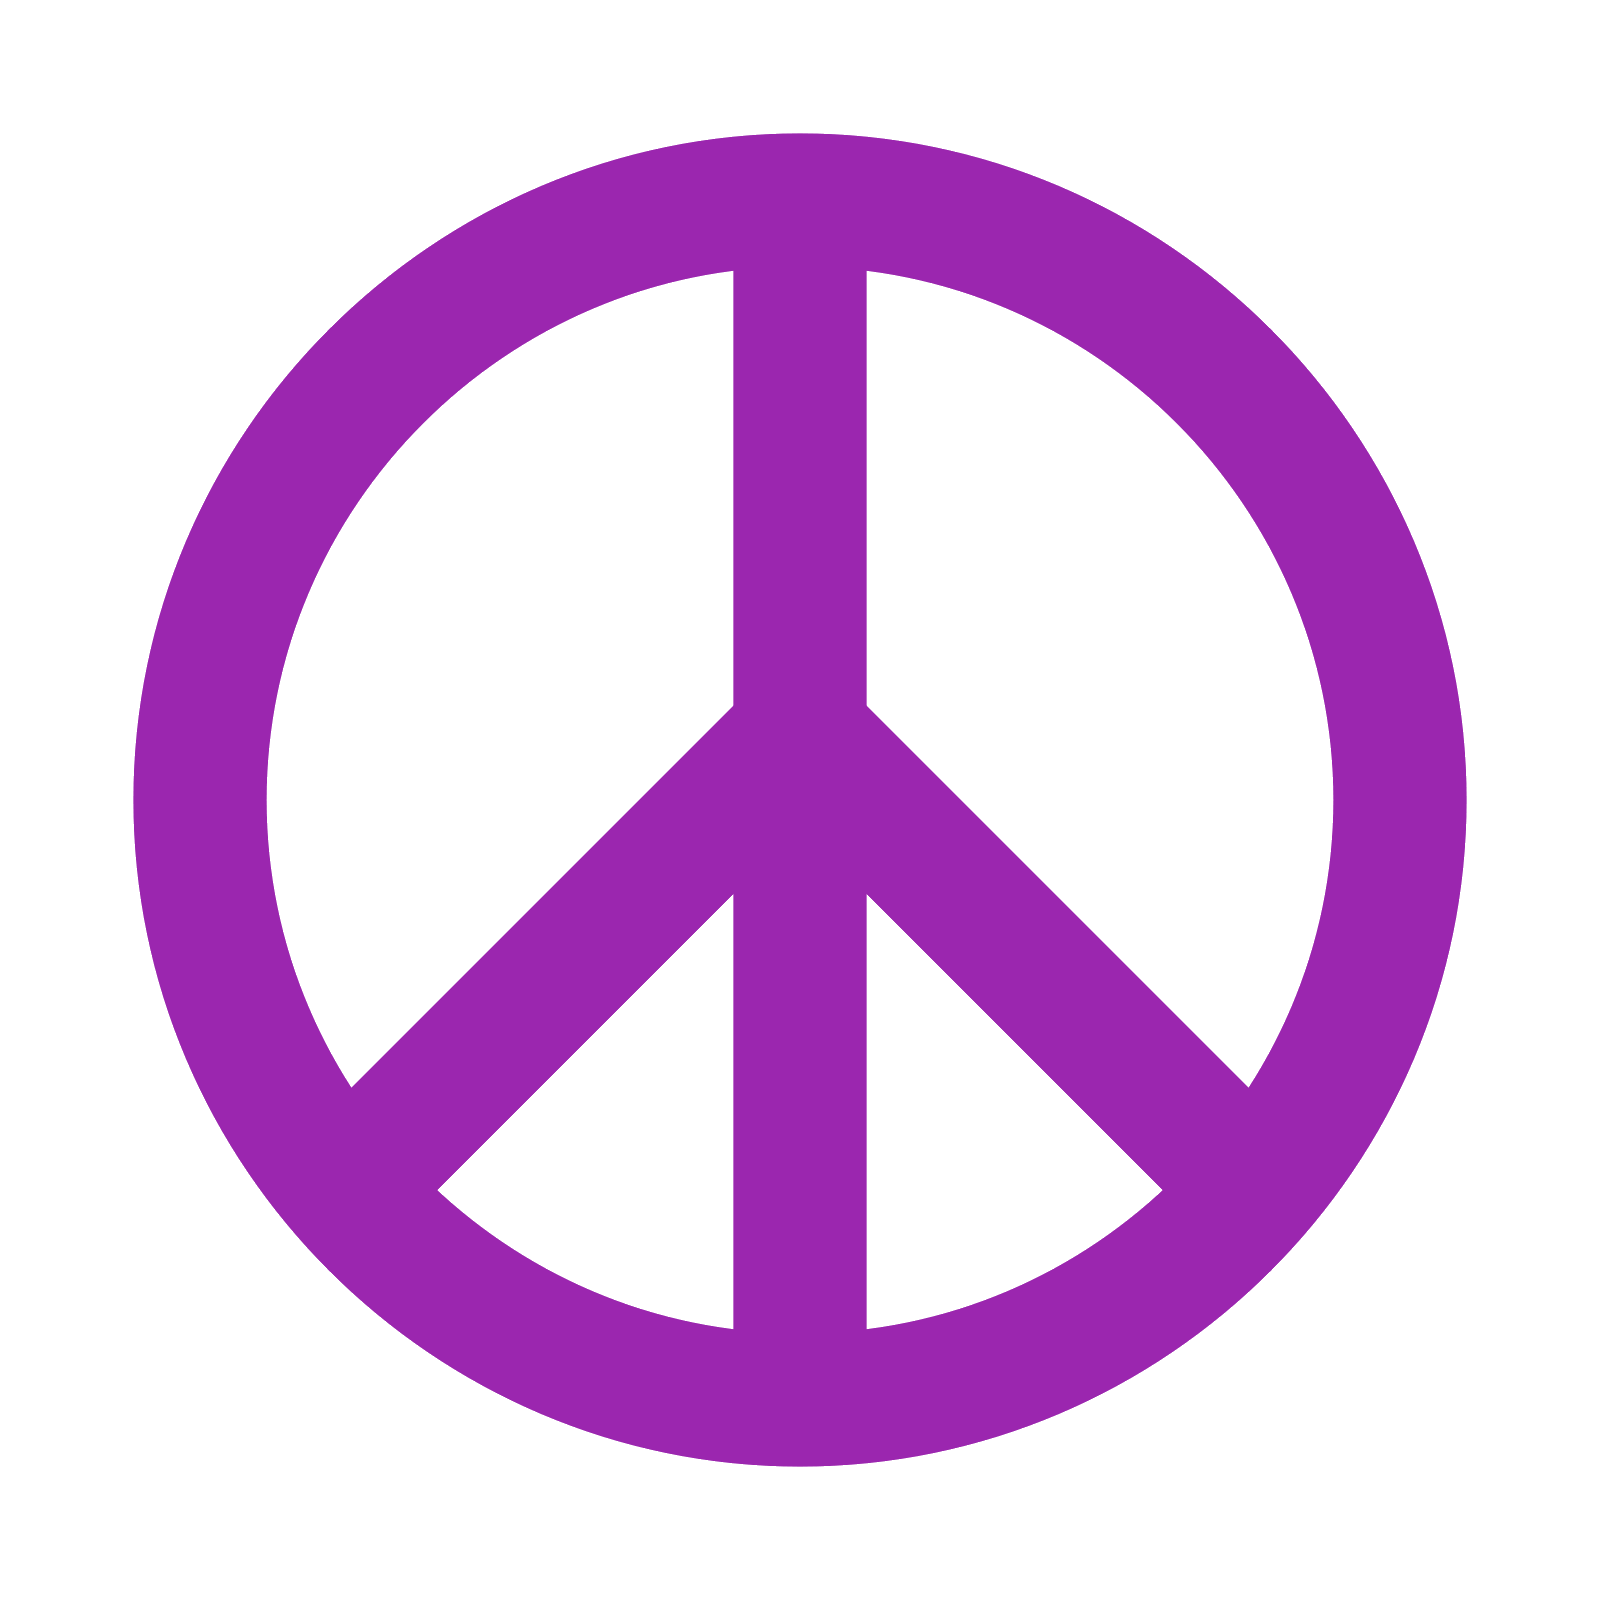 Símbolo de paz